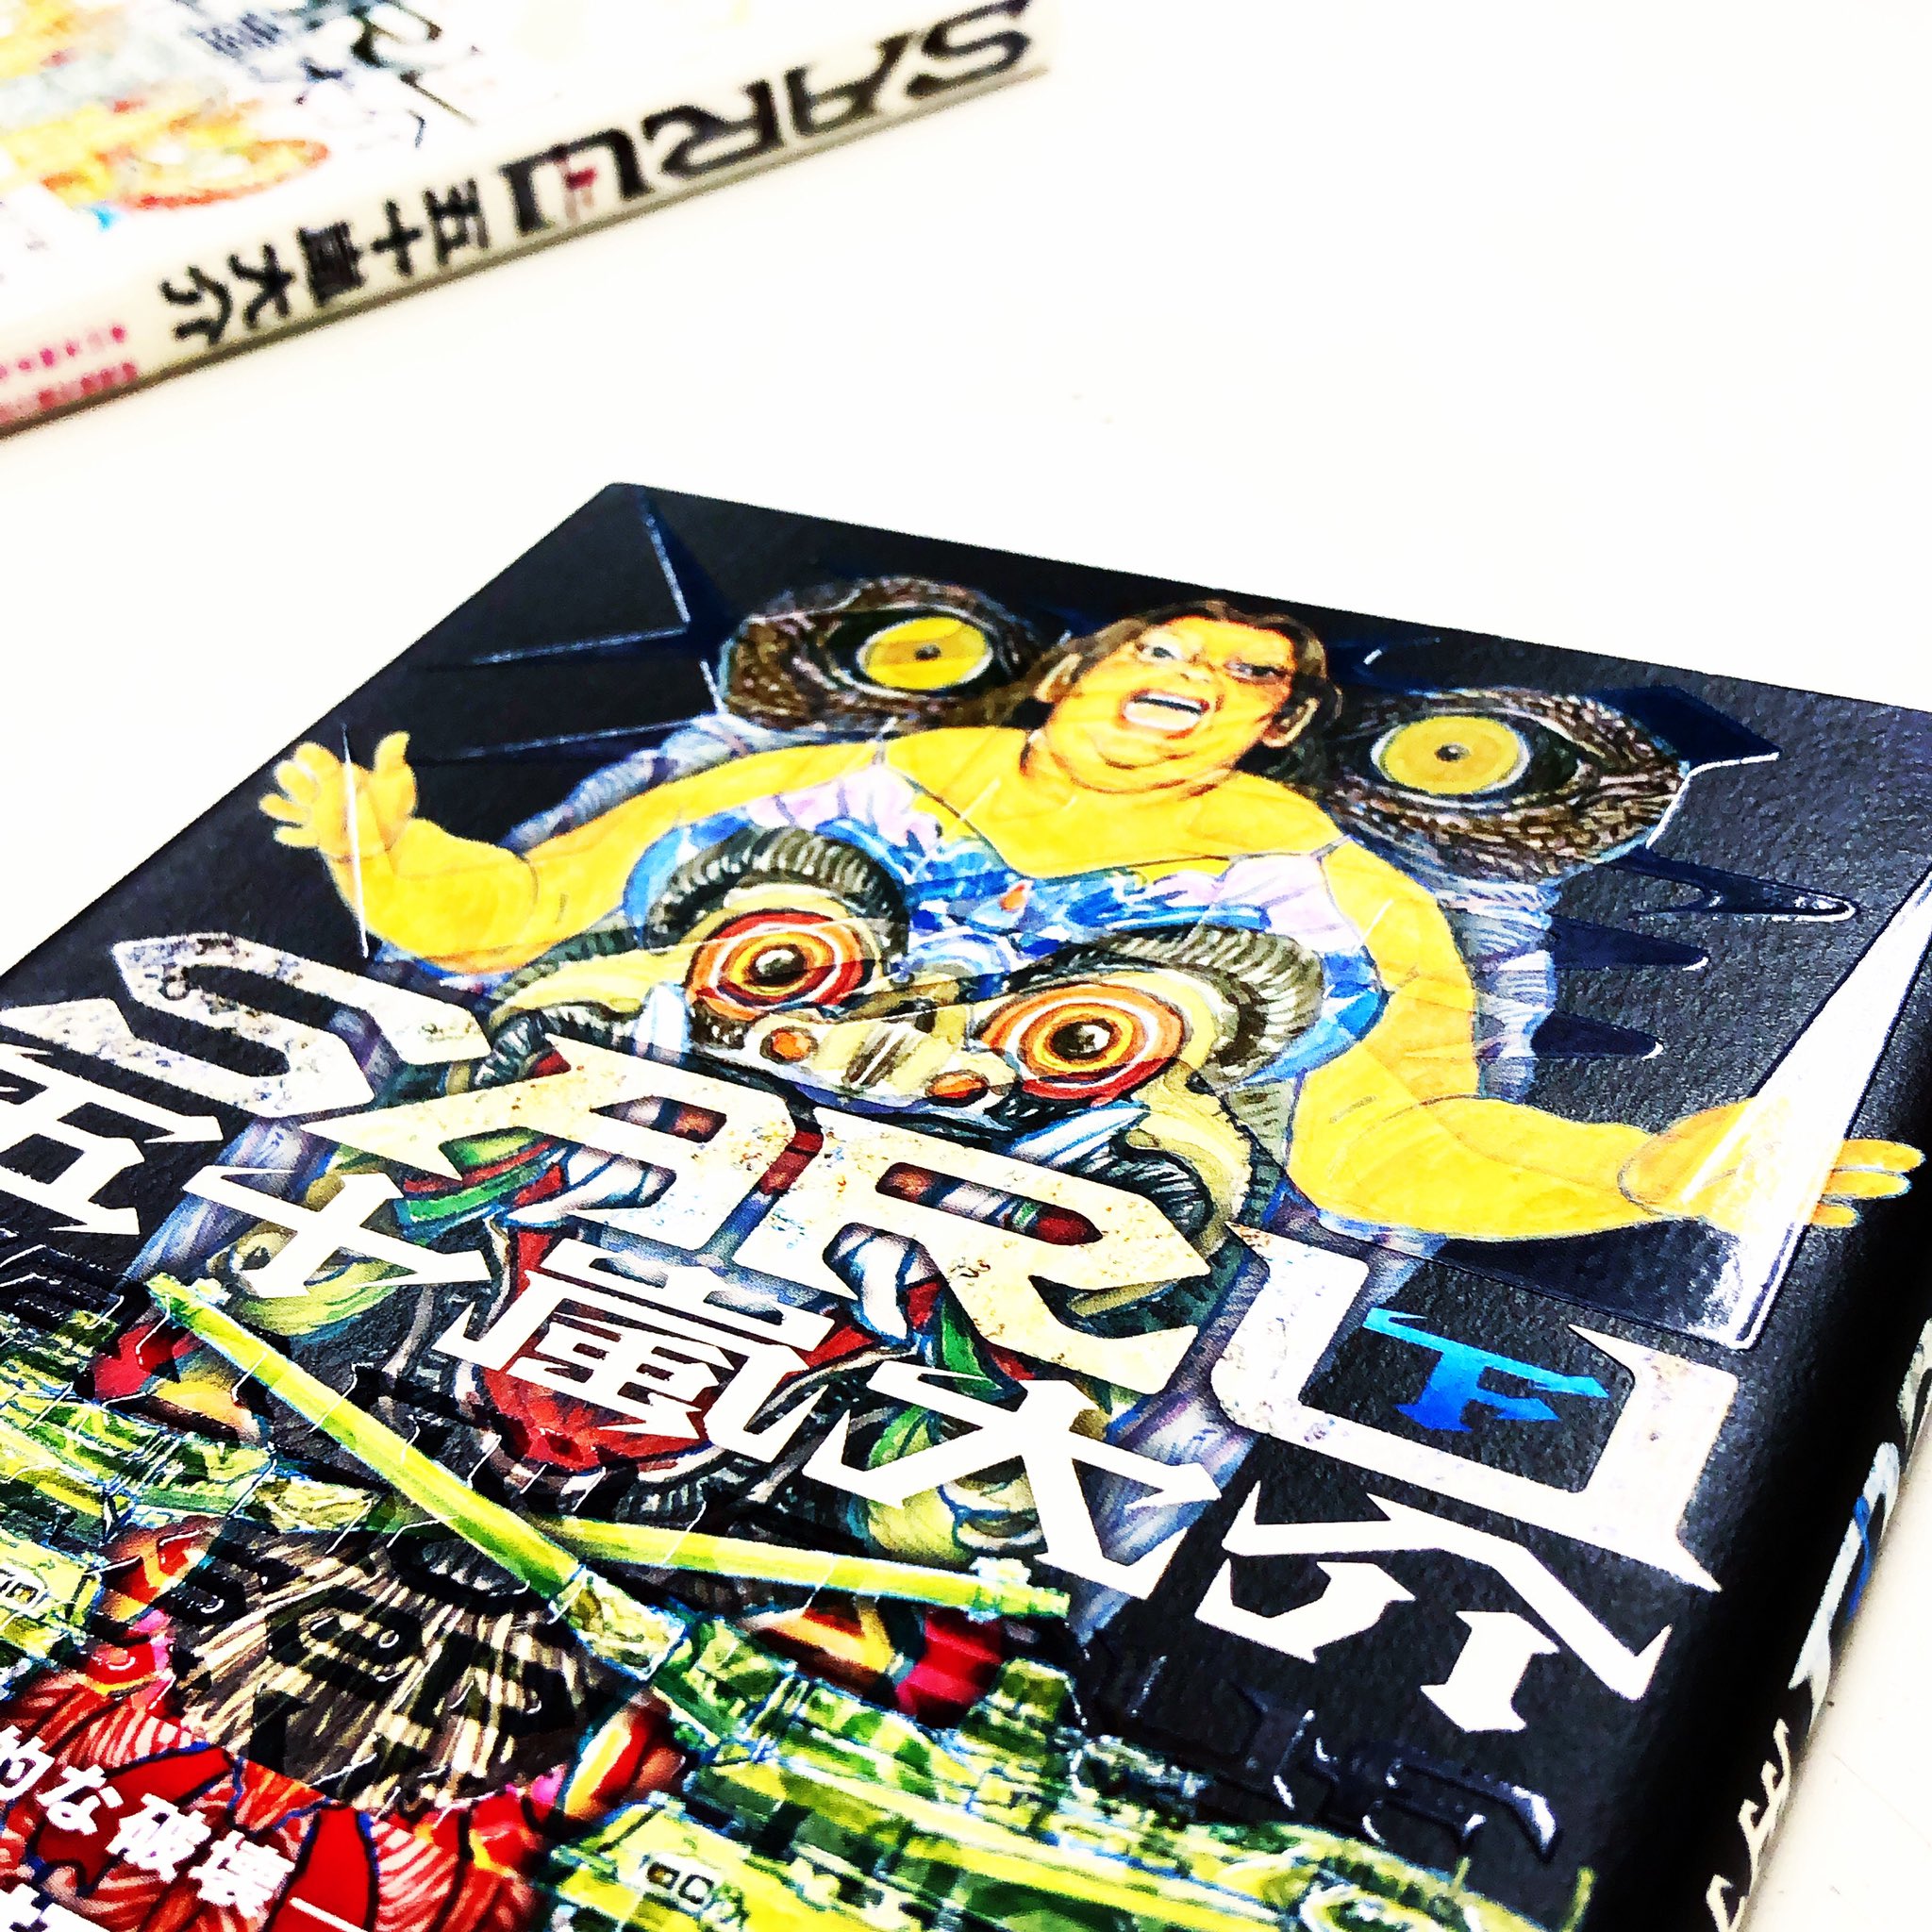 漫画林 札幌マンガ古本屋 Pa Twitter 入荷案内です 五十嵐大介さんの Saru 全巻セットが 入りました 五十嵐大介さんのコーナーにあります 1 漫画 Comic まんが マンガ Manga Comics Comicmagazine 少年漫画 青年漫画 少女漫画 Sapporo 札幌